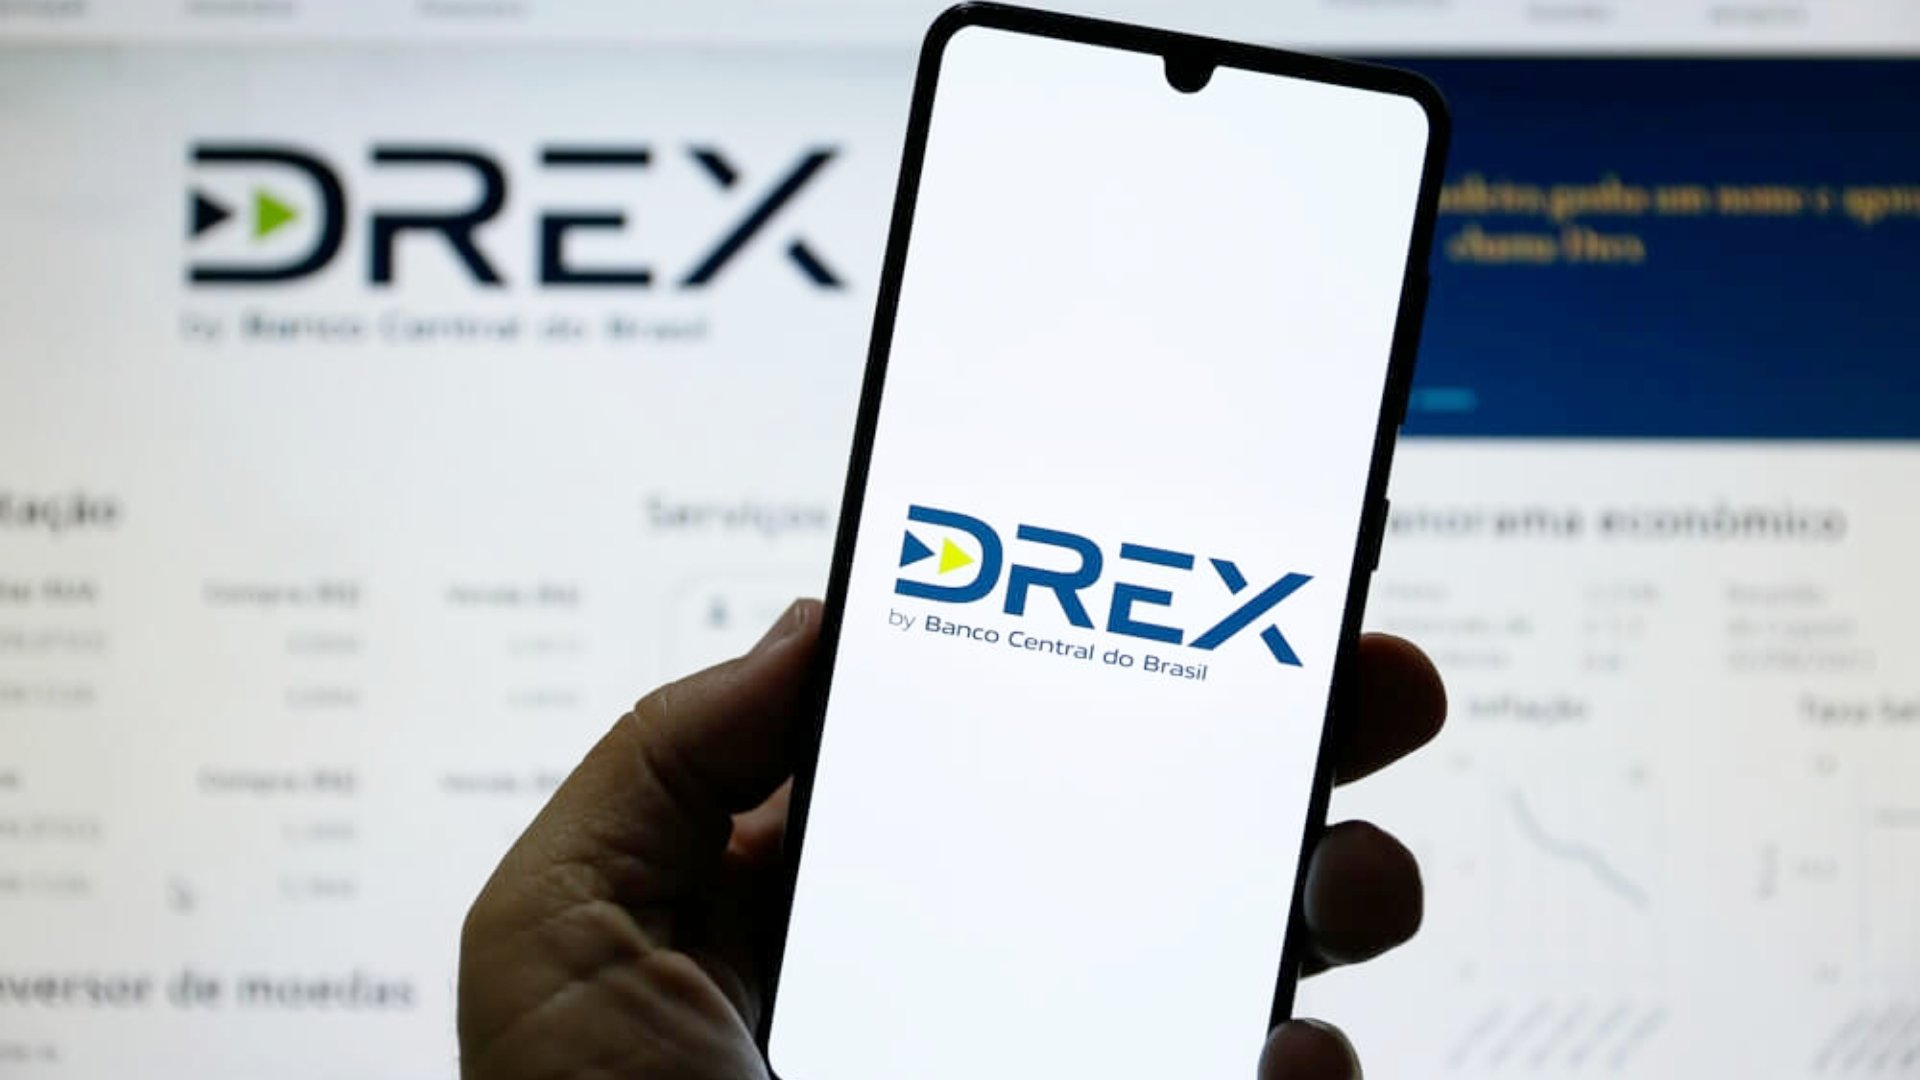 El real digital, la CBDC que emitira Brasil, ya tiene nombre y logotipo propio: Drex